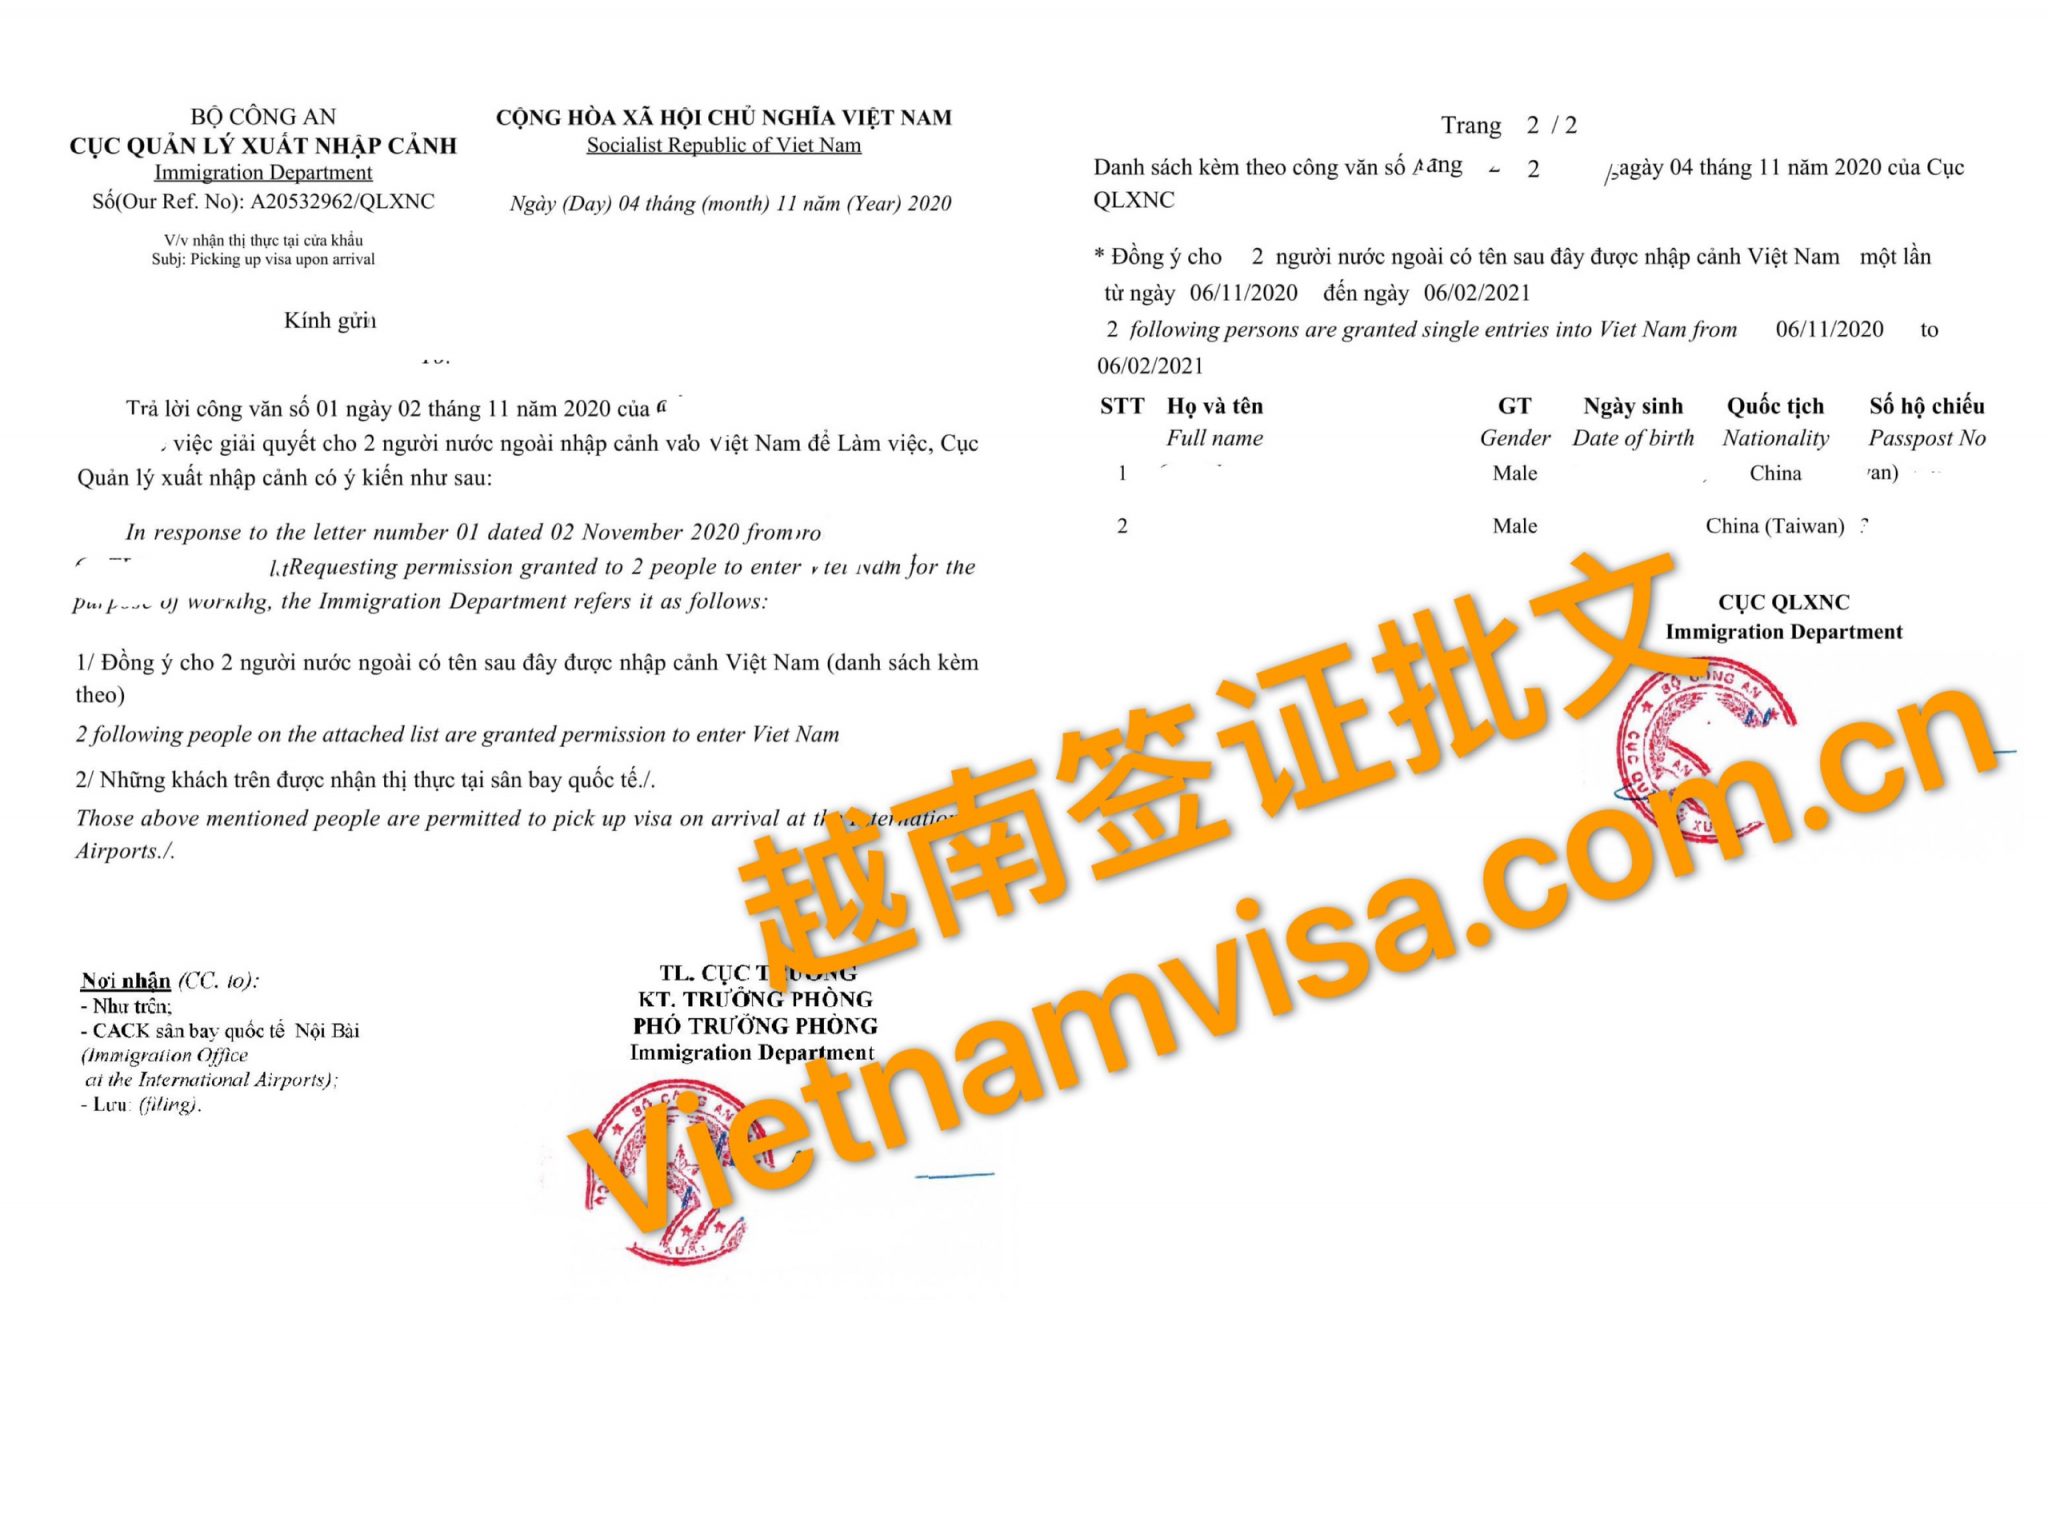 越南入境隔離減半新規 相關驗證仍在制定中 | 國際 | 中央社 CNA